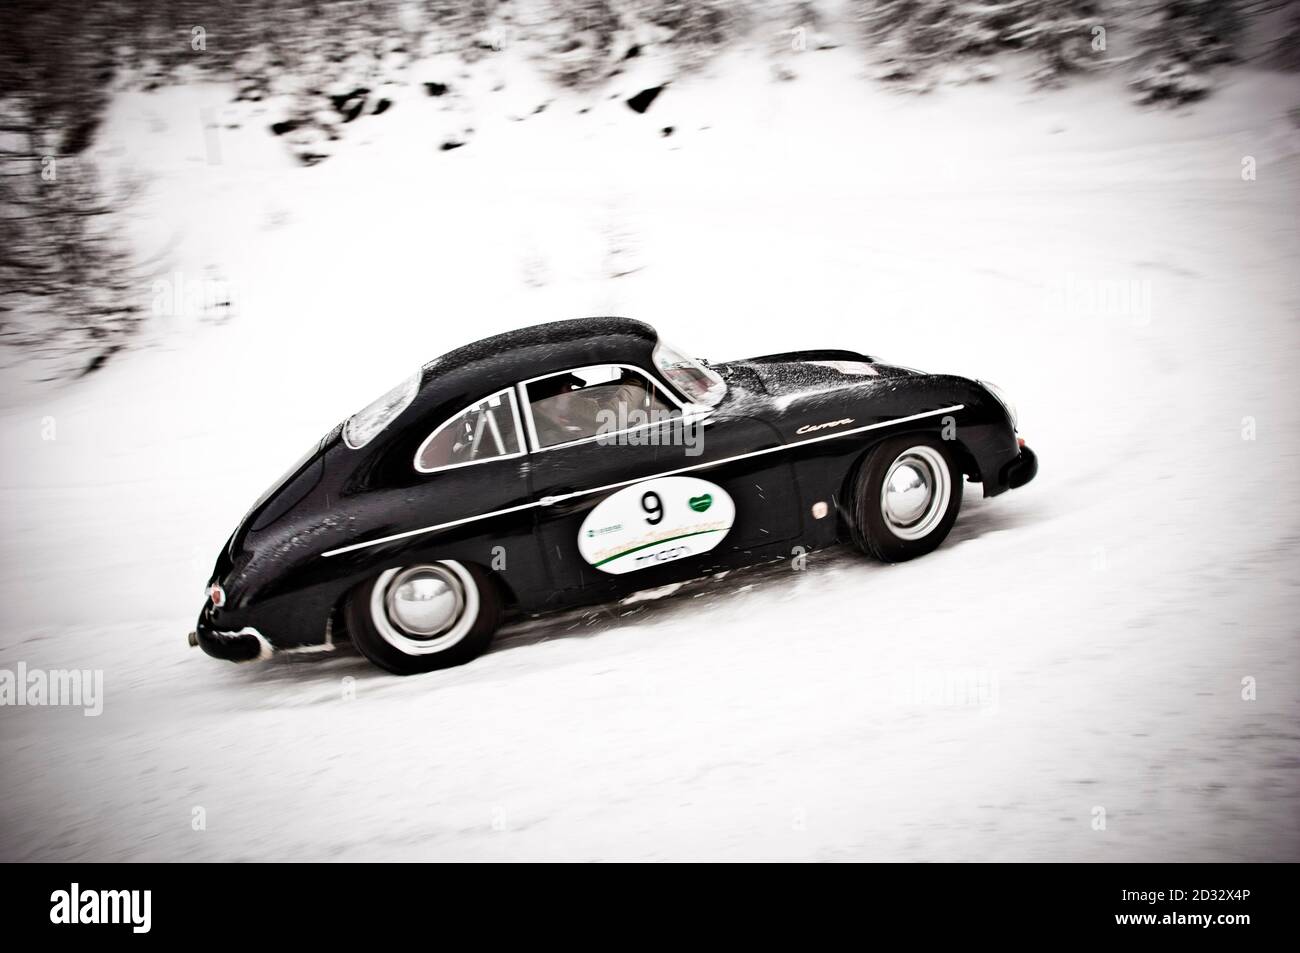 SCHLADMING, AUSTRIA  - JAN 12, 2008: A Porsche 356 at the Planai Classic Stock Photo